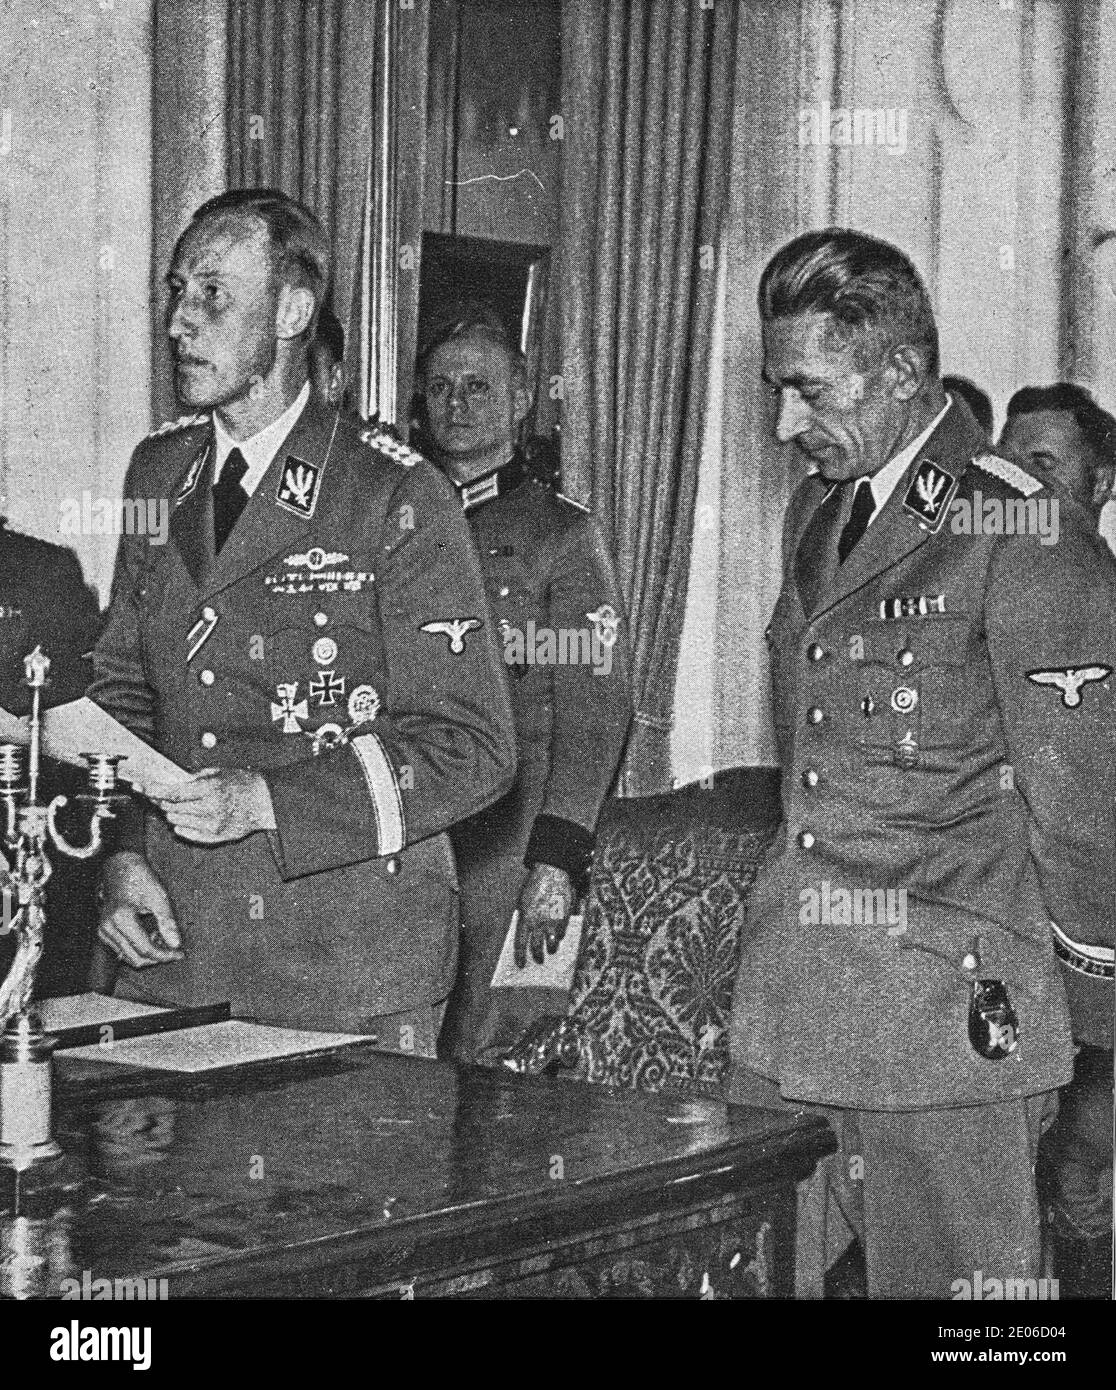 PRAG, PROTEKTORAT BÖHMEN UND MÄHREN - UM 1942: Reinhard Heydrich (links) mit Karl Hermann Frank. Heydrich hält eine Rede vor Publikum. Stockfoto